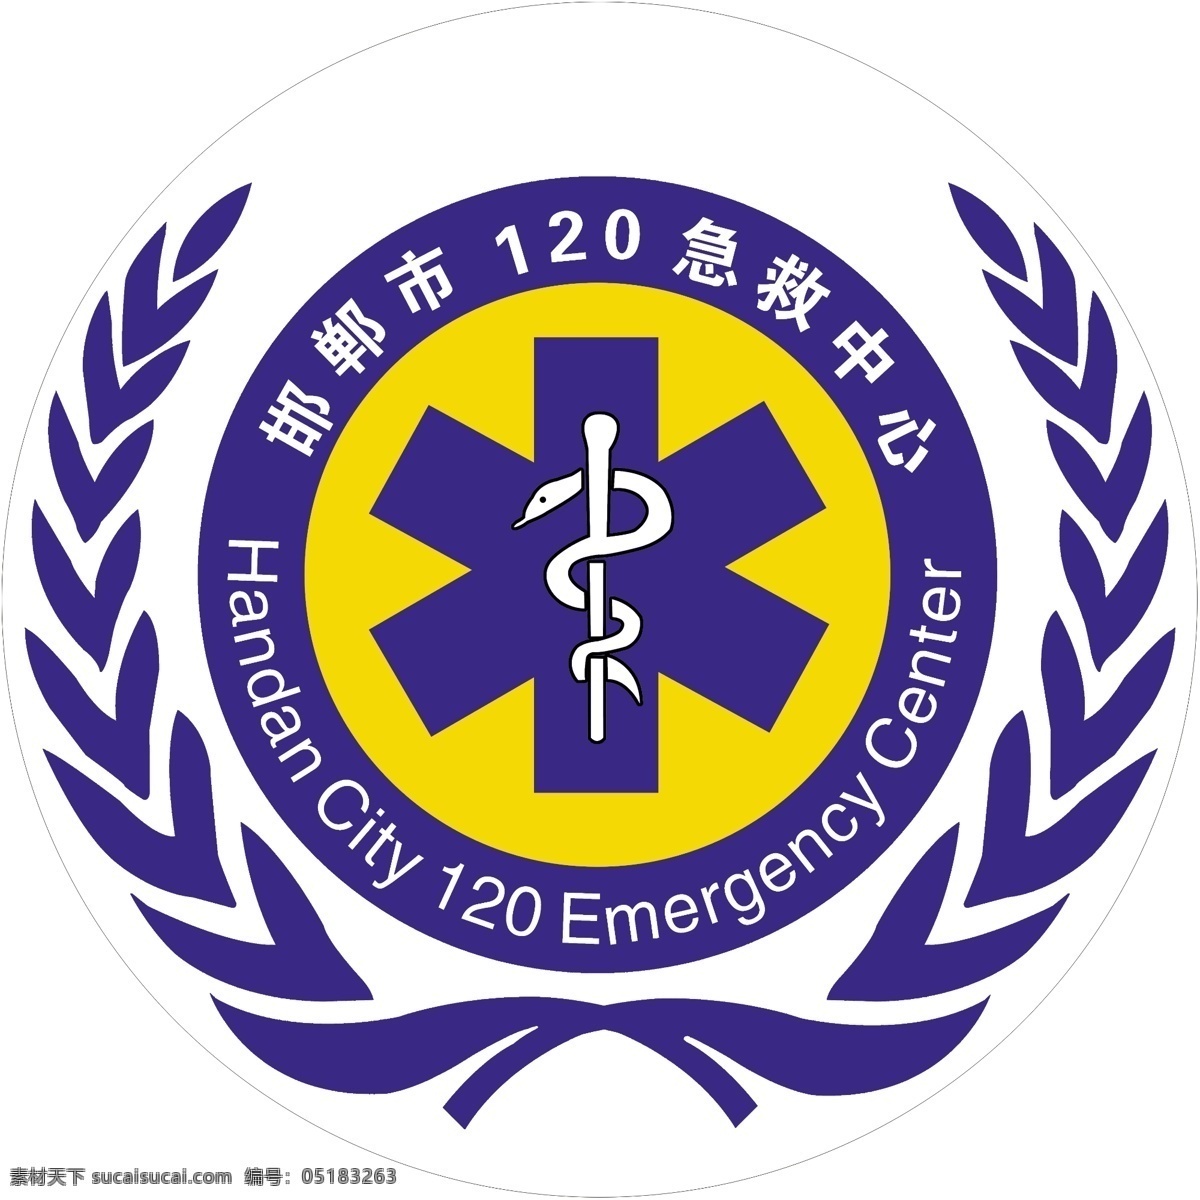 医院急救标志 邯郸市 急救中心 标志设计 广告设计模板 源文件